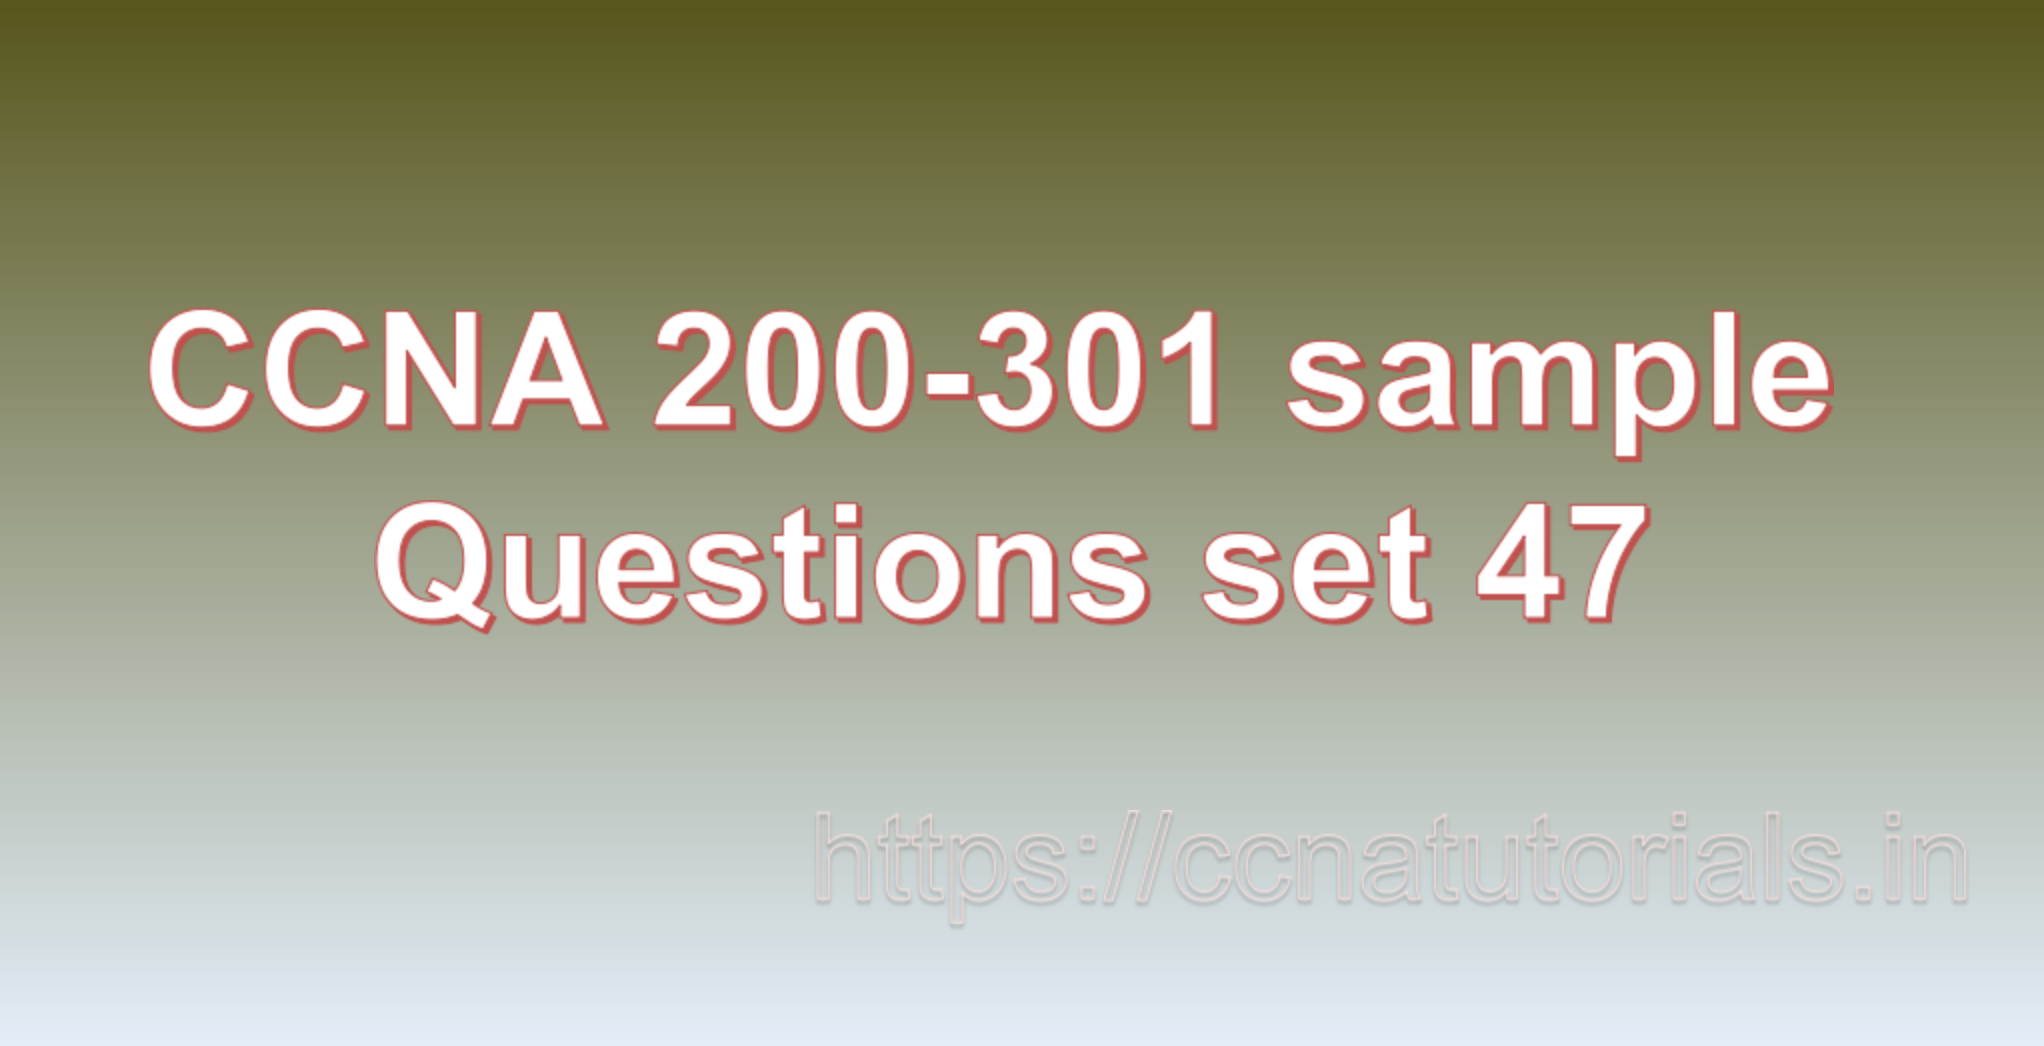 ccna sample questions set 47, ccna tutorials, CCNA Exam, ccna